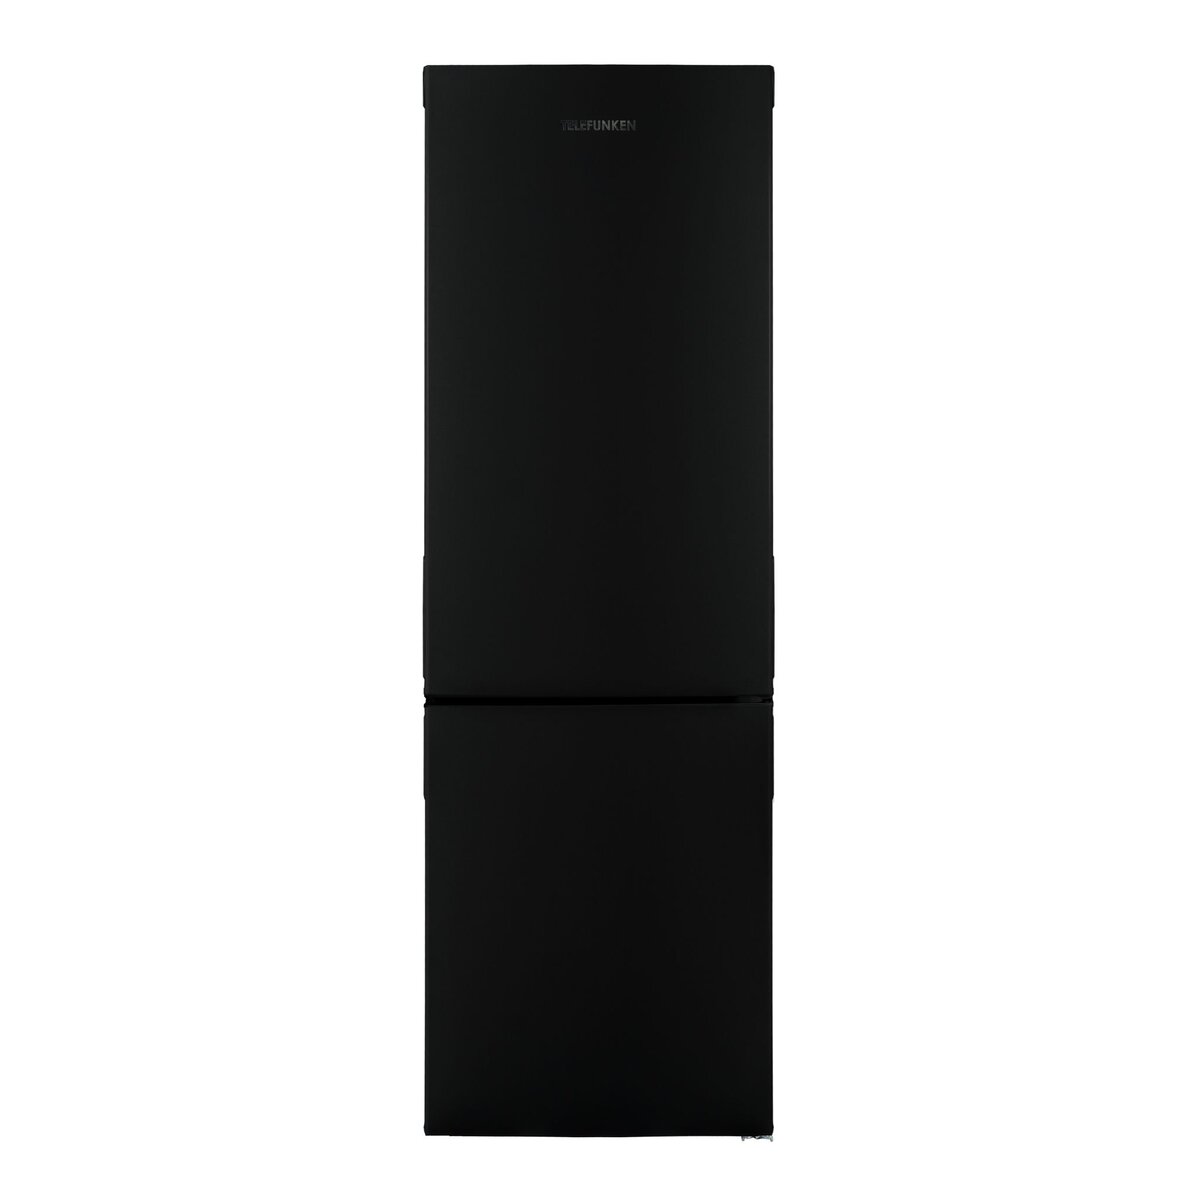 TELEFUNKEN Réfrigérateur 1 porte GN3651A+, 290 L, Froid Statique